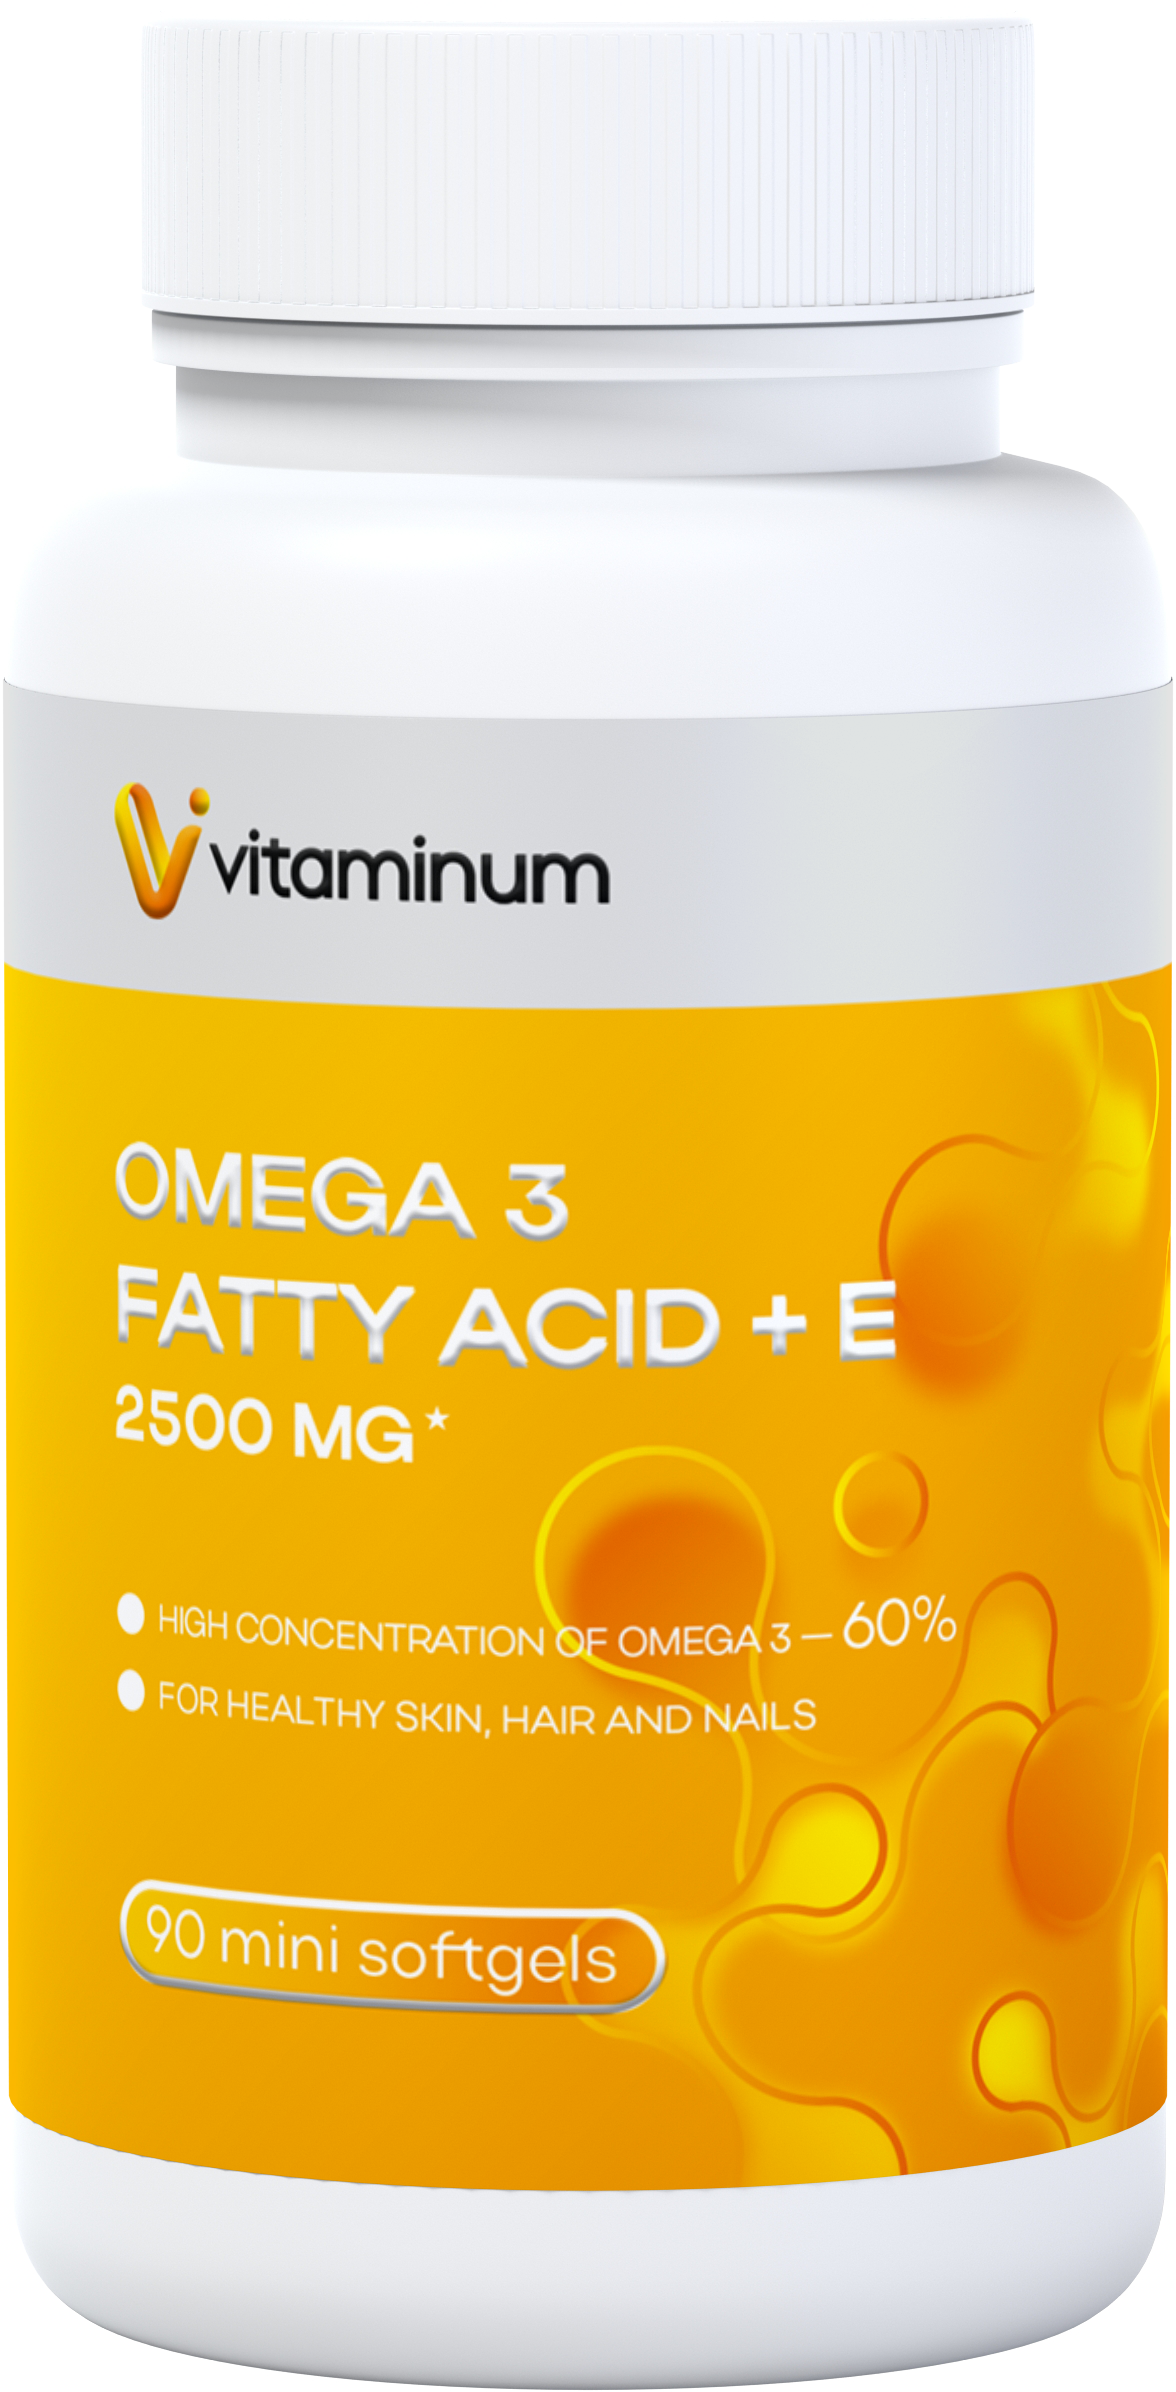  Vitaminum ОМЕГА 3 60% + витамин Е (2500 MG*) 90 капсул 700 мг   в Апатитах